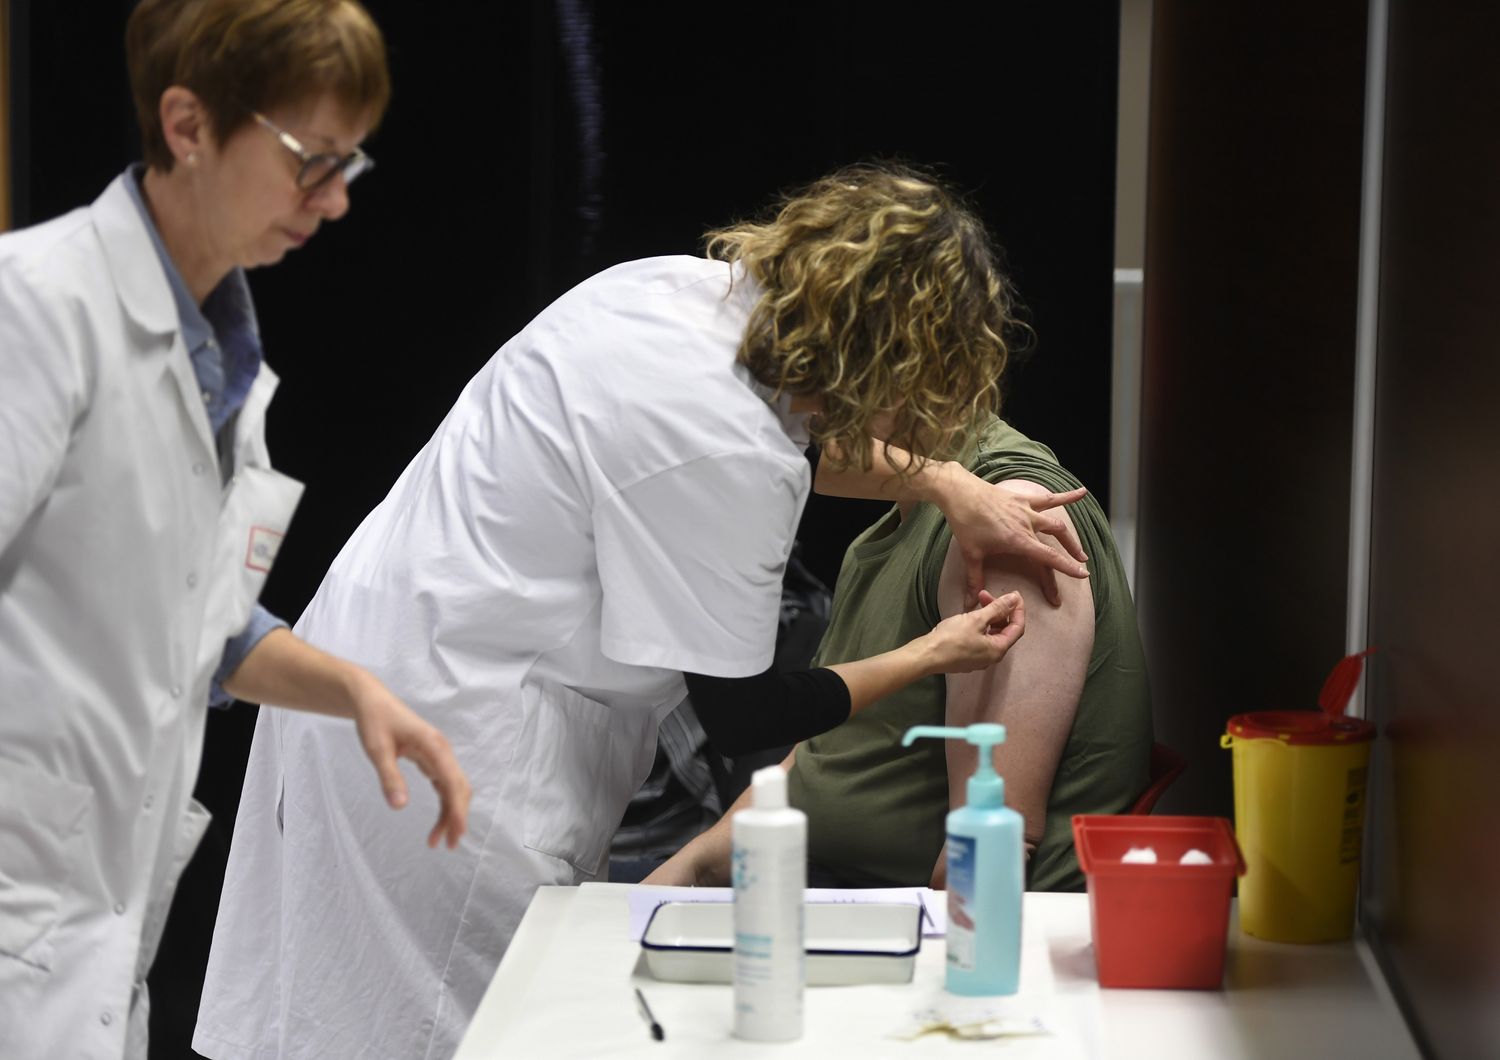 Centinaia di volontari in diversi paesi del mondo si stanno sottoponendo alla sperimentazione dei potenziali vaccini per il coronavirus